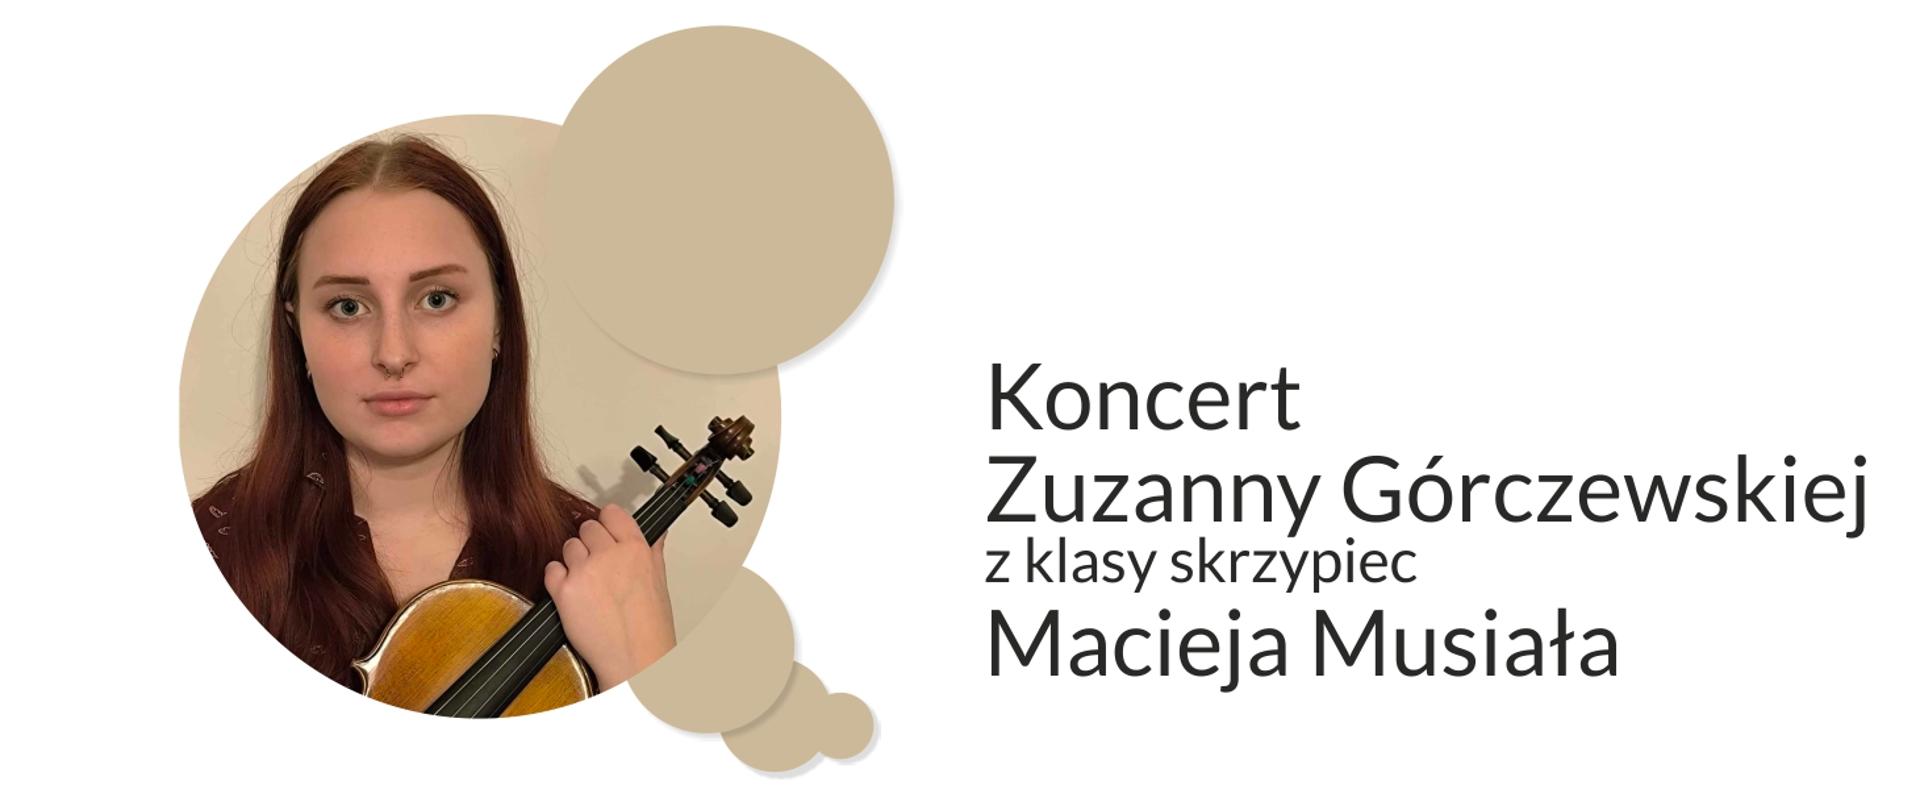 Grafika prezentuje zdjęcie Zuzanny Górczewskiej oraz napis: Koncert Zuzanny Górczewskiej z klasy skrzypiec Macieja Musiała